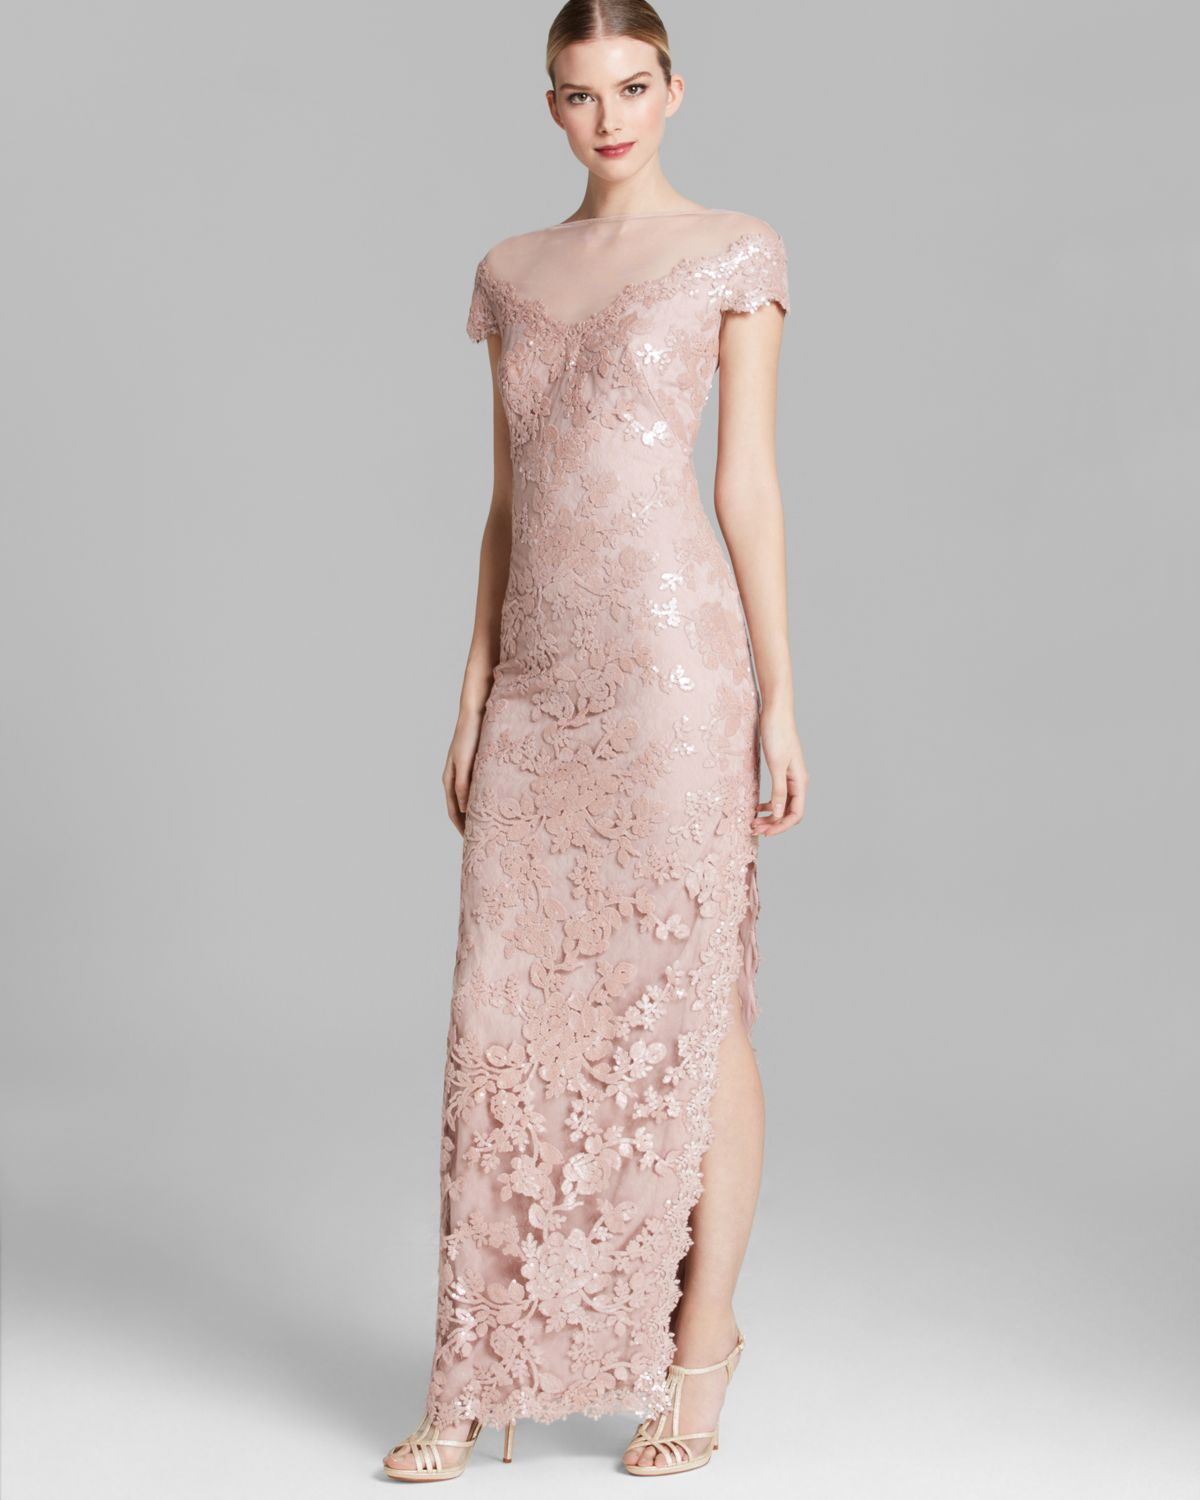 Lyst - Tadashi shoji Shoji Gown Illusion Neckline Sequin Lace in Pink